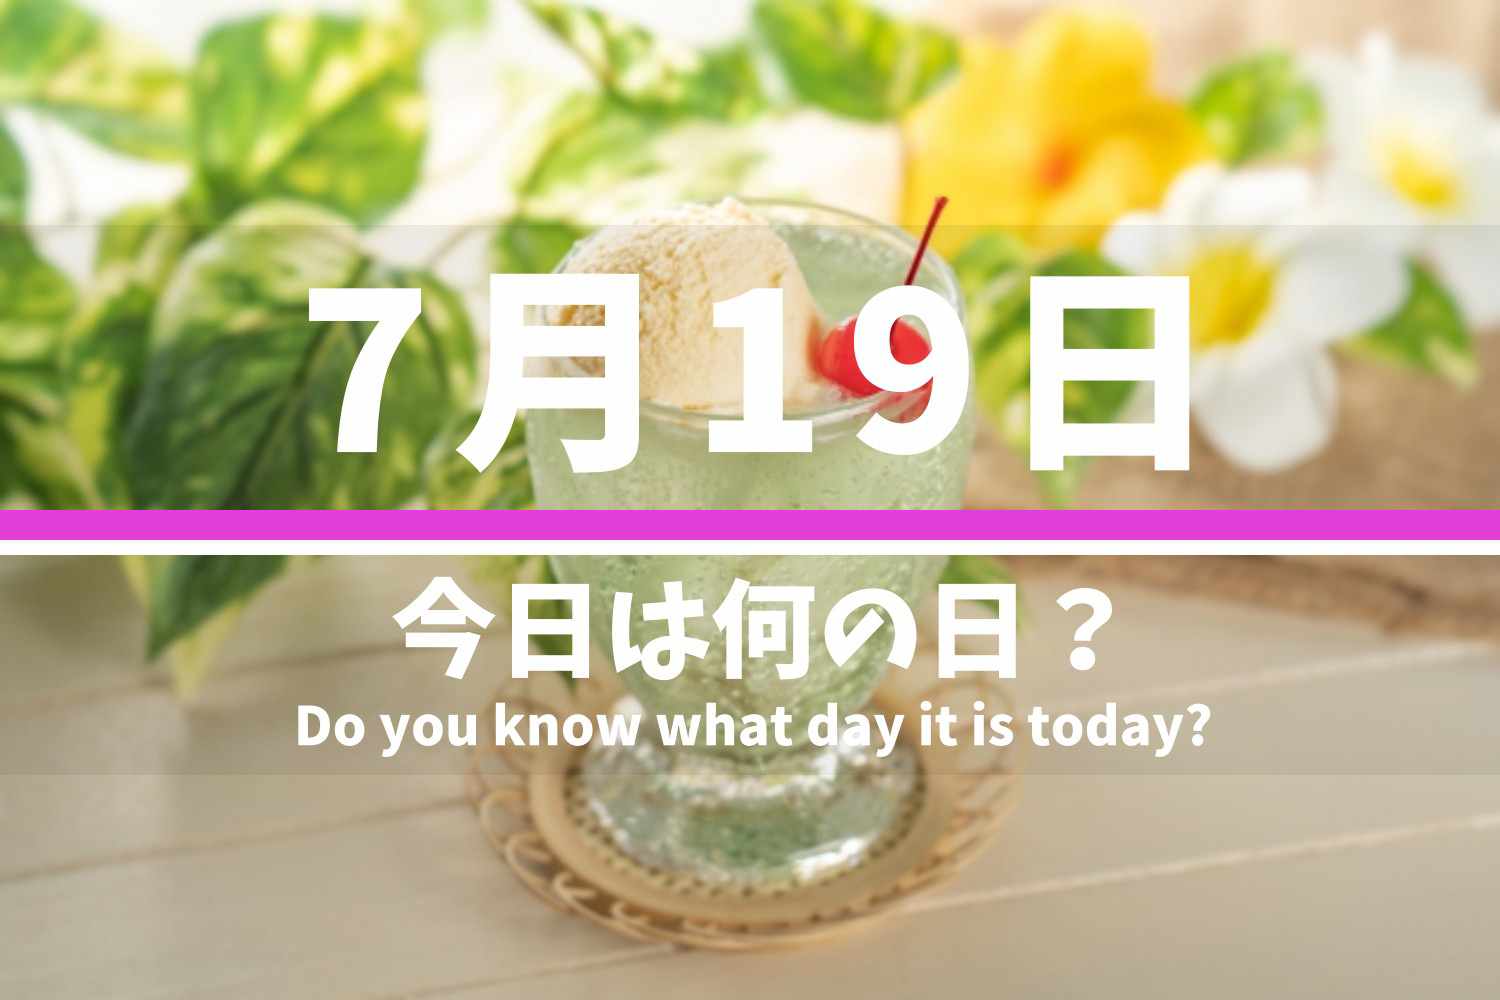 7月19日 今日は何の日？